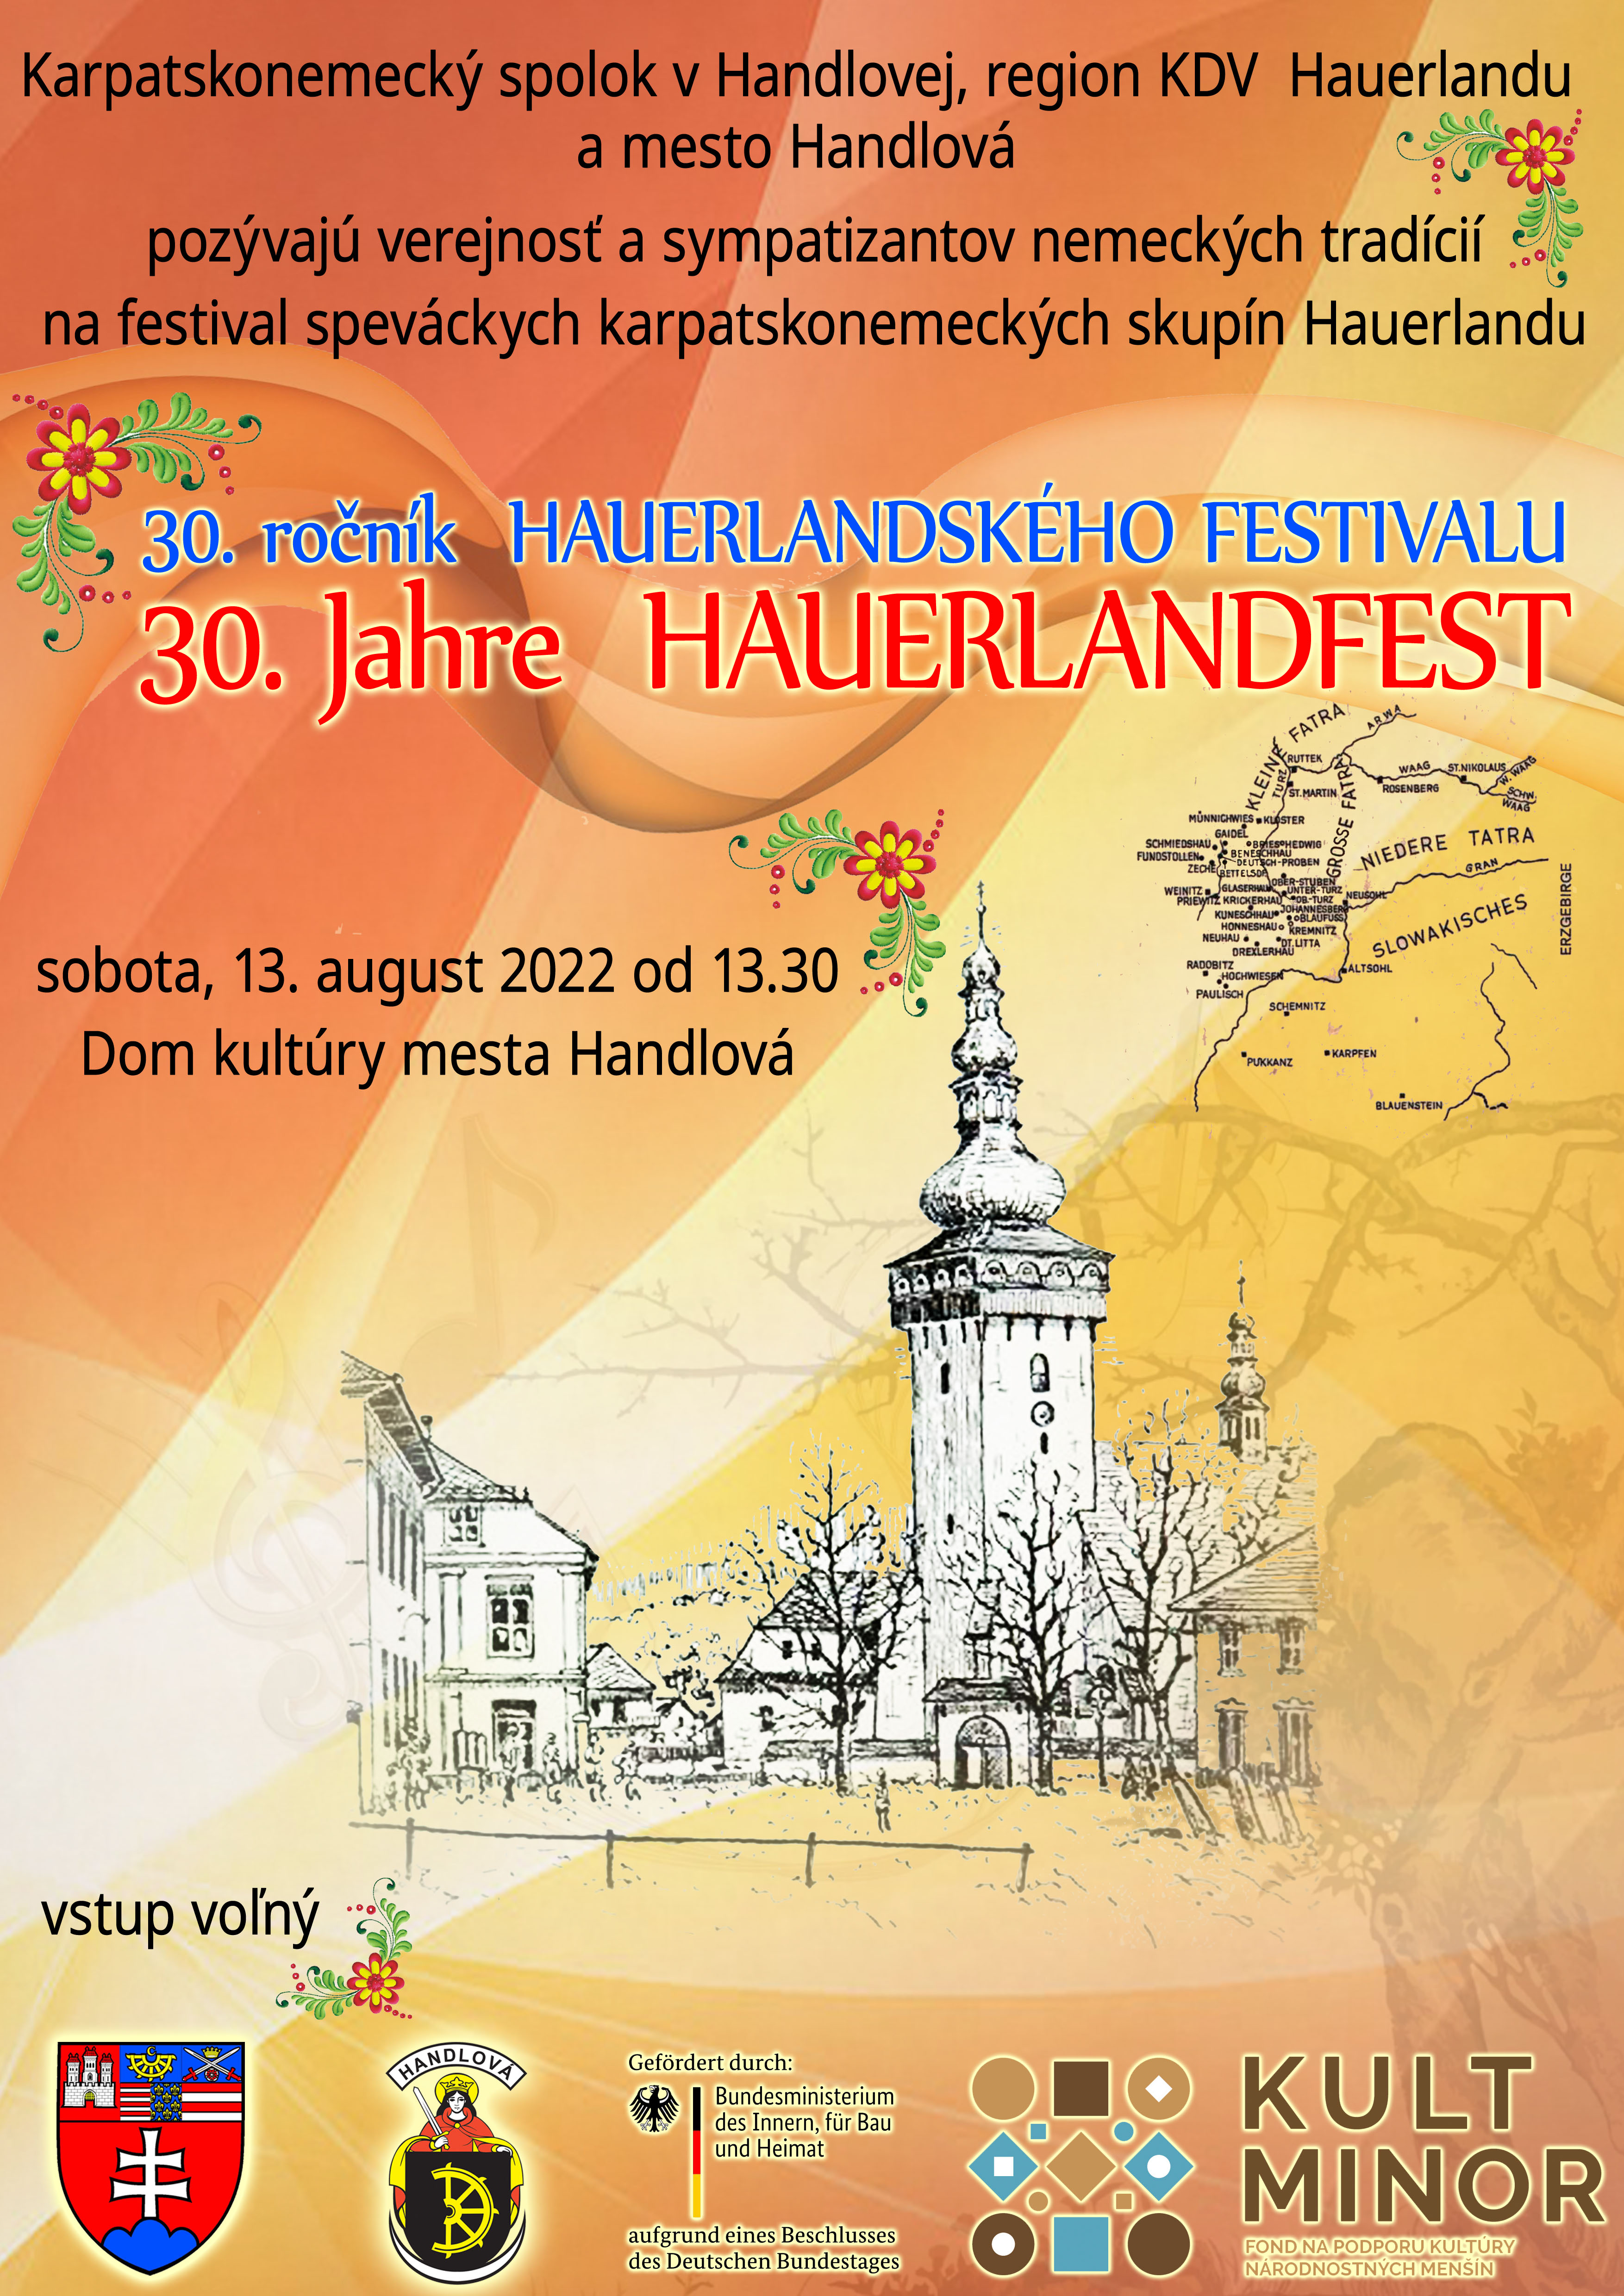 30. ronk Hauerlandskho festivalu 2022 Handlov